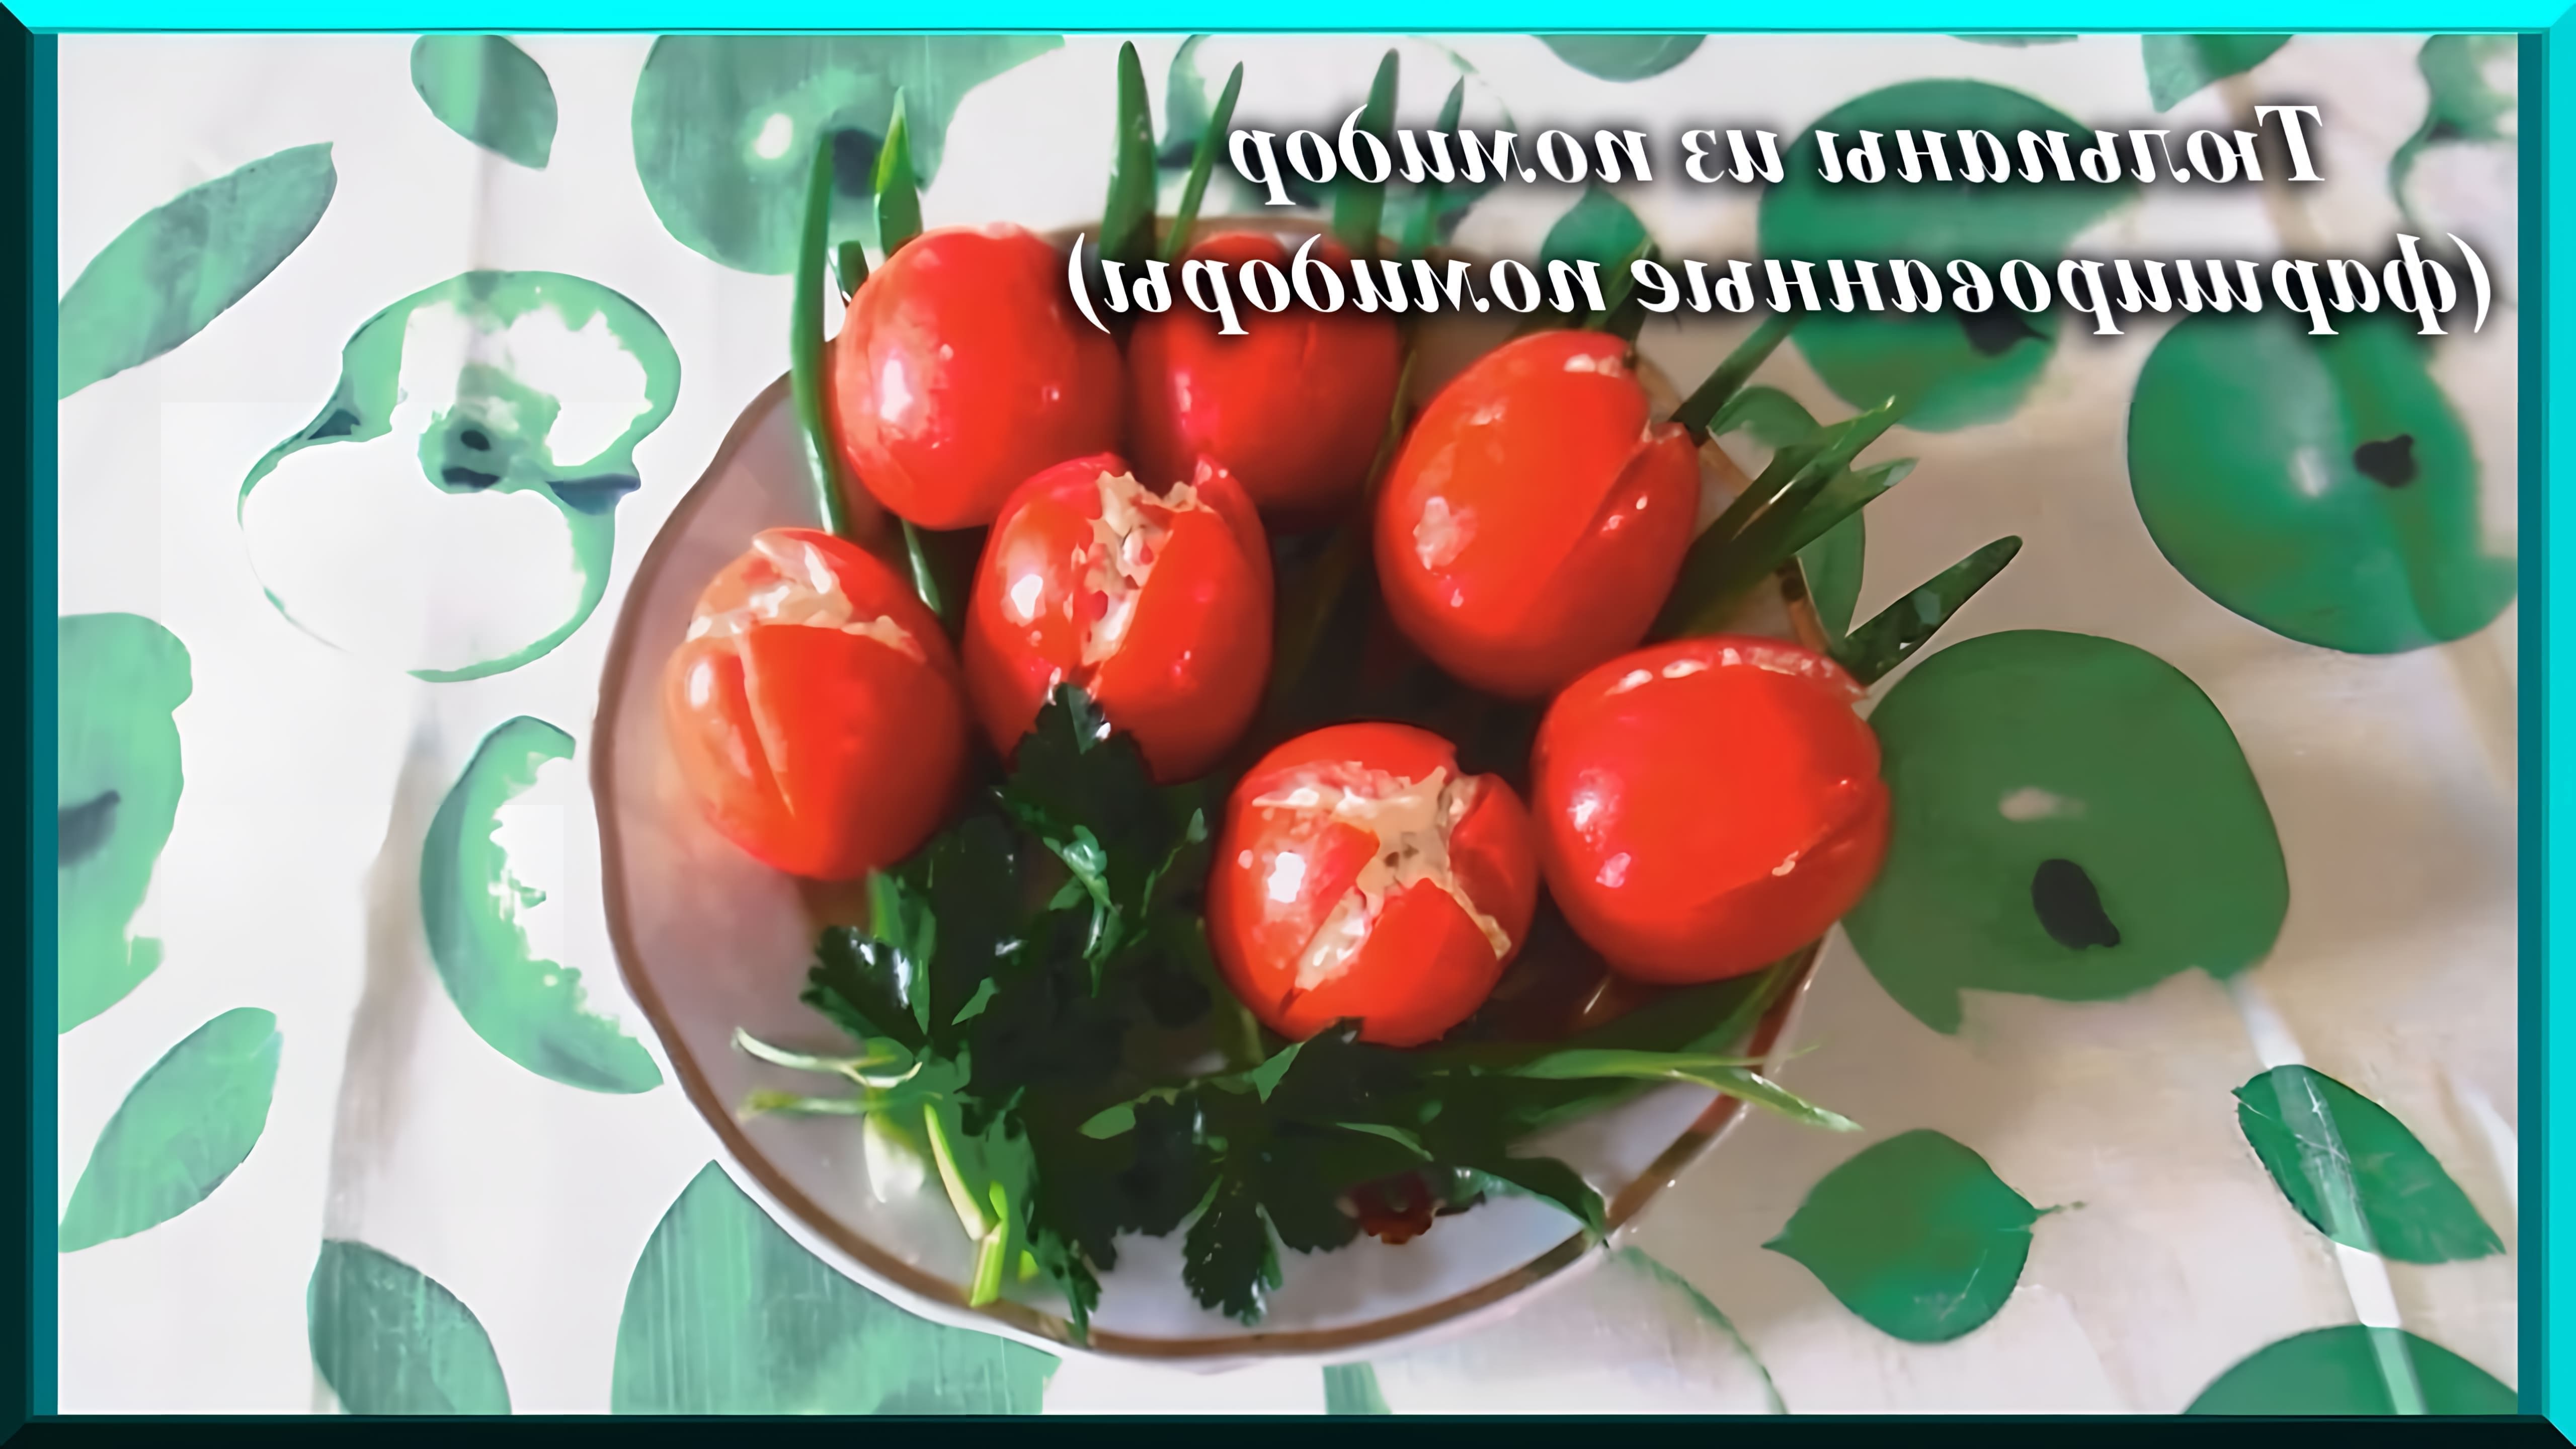 В этом видео Светлана Химина показывает, как приготовить оригинальную закуску - тюльпаны из фаршированных помидоров